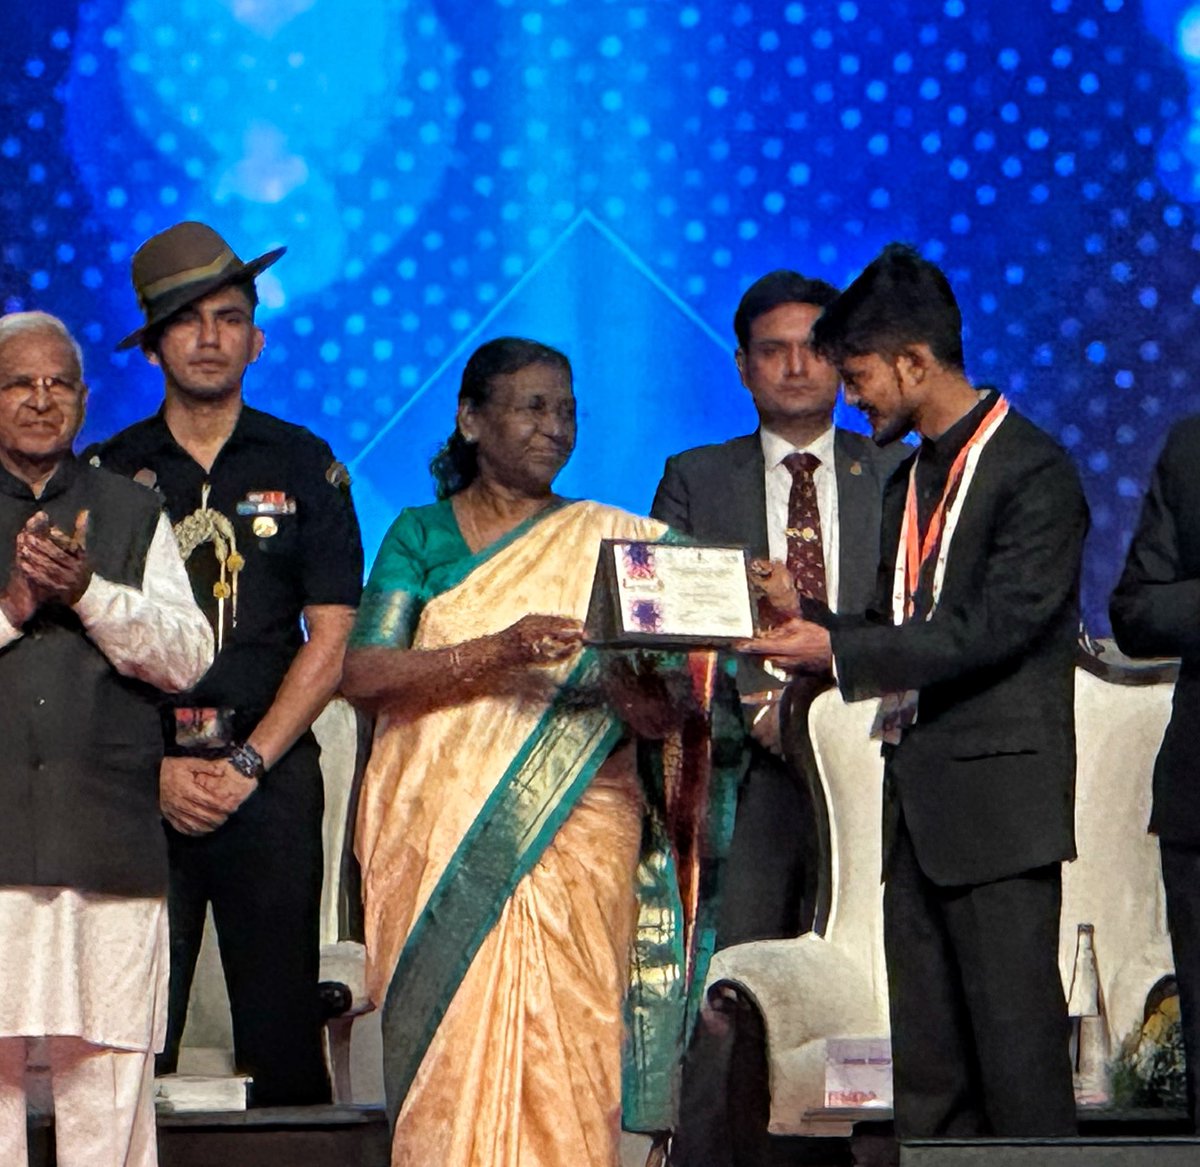 काशी का सम्मान! काशीवासियों का सम्मान! इंडिया स्मार्ट सिटीज़ अवार्ड कंटेस्ट में महामहीम राष्ट्रपति महोदया द्वारा वाराणसी को नार्थ ज़ोन की सर्वश्रेष्ठ स्मार्ट सिटी का पुरस्कार दिया गया। मुख्य कार्यकारी अधिकारी, शिपू गिरी द्वारा यह पुरस्कार ग्रहण किया गया। #SmartCitiesConclave